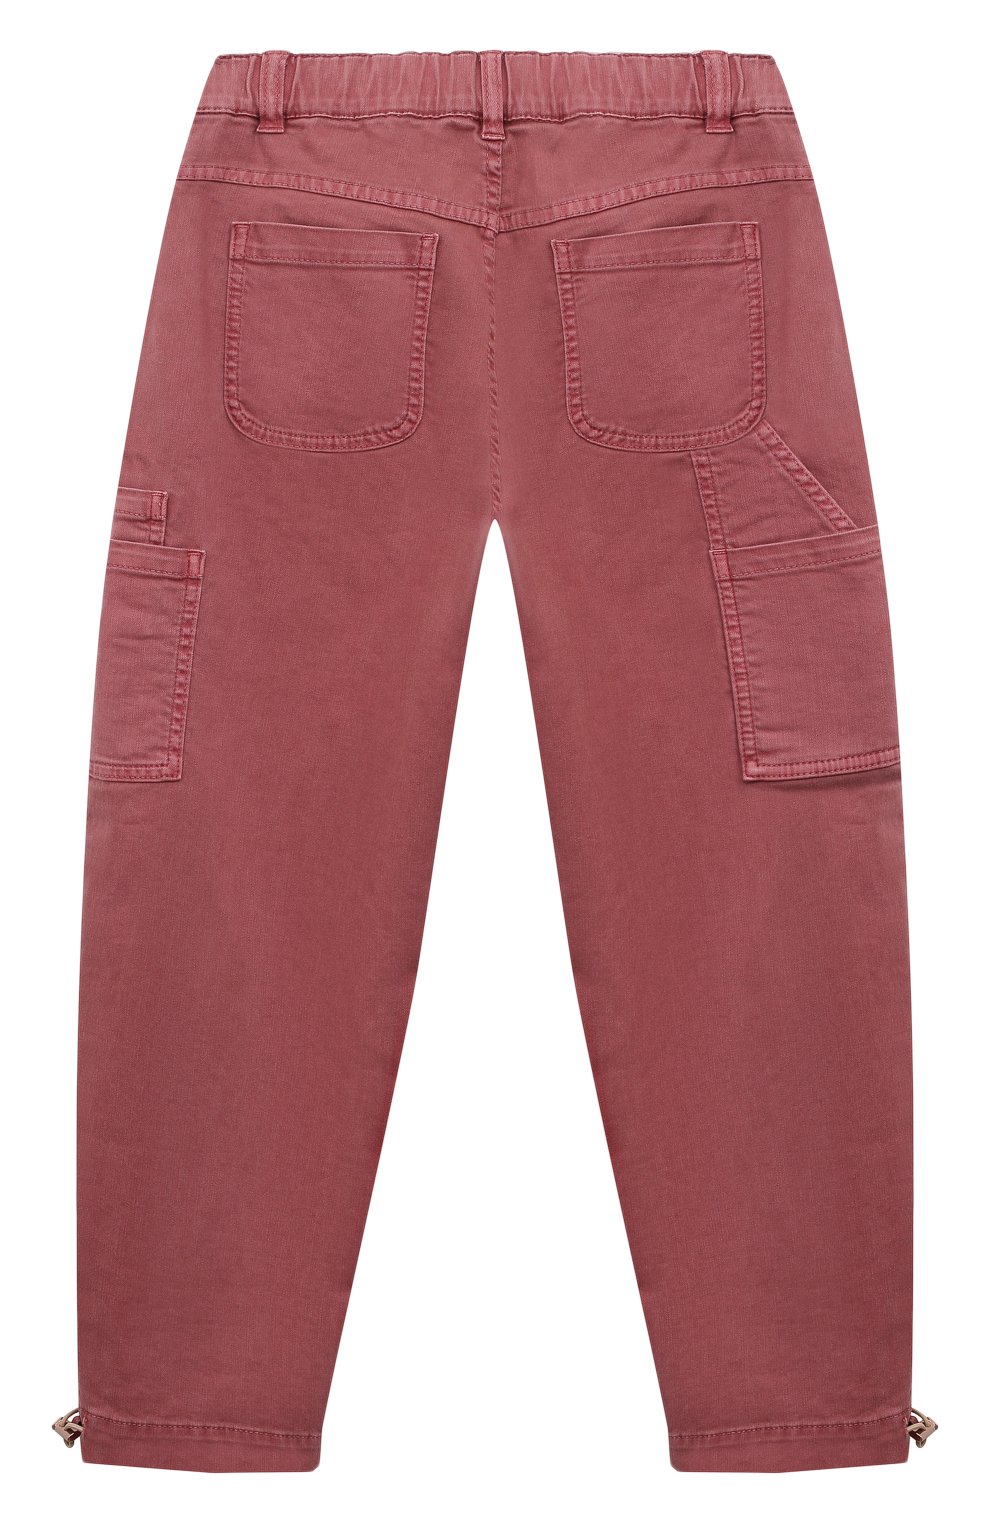 Детские джинсы BRUNELLO CUCINELLI розового цвета, арт. BA080P490C | Фото 2 (Материал внешний: Хлопок, Лиоцелл, Растительное волокно)